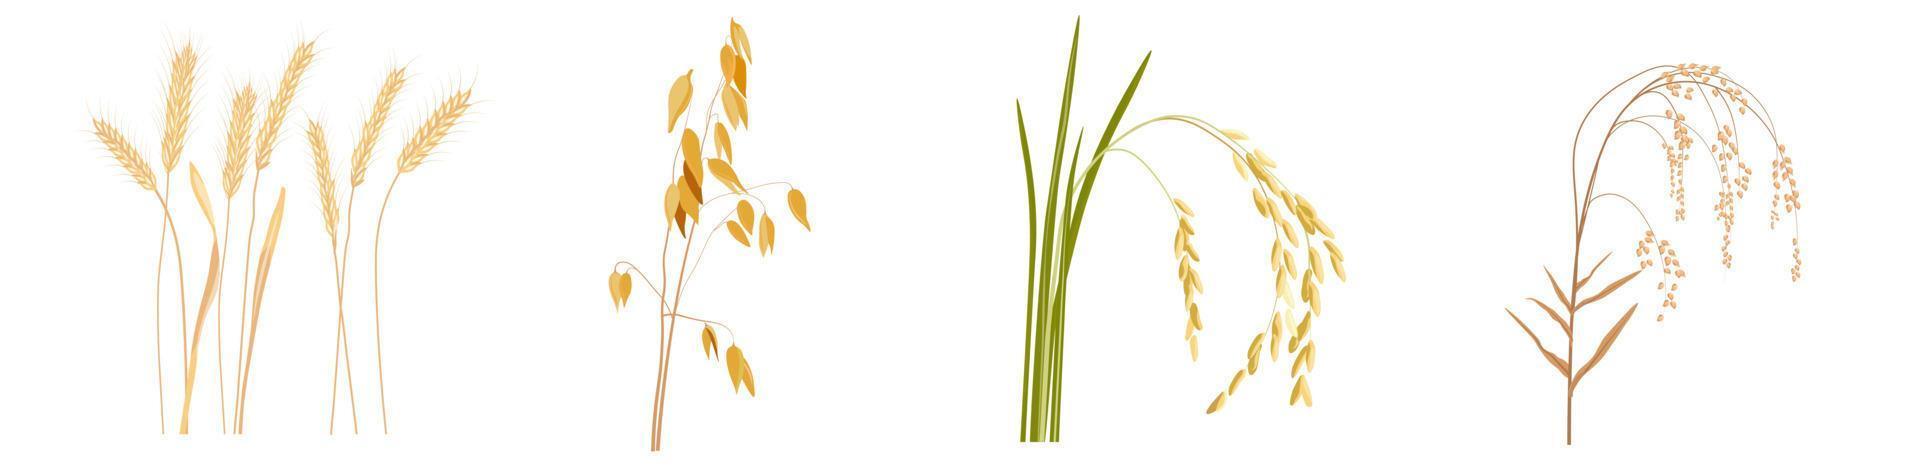 cereali, avena, grano, riso, miglio illustrazione stock vettoriale. un insieme di piante di grano di pane. Isolato su uno sfondo bianco. vettore